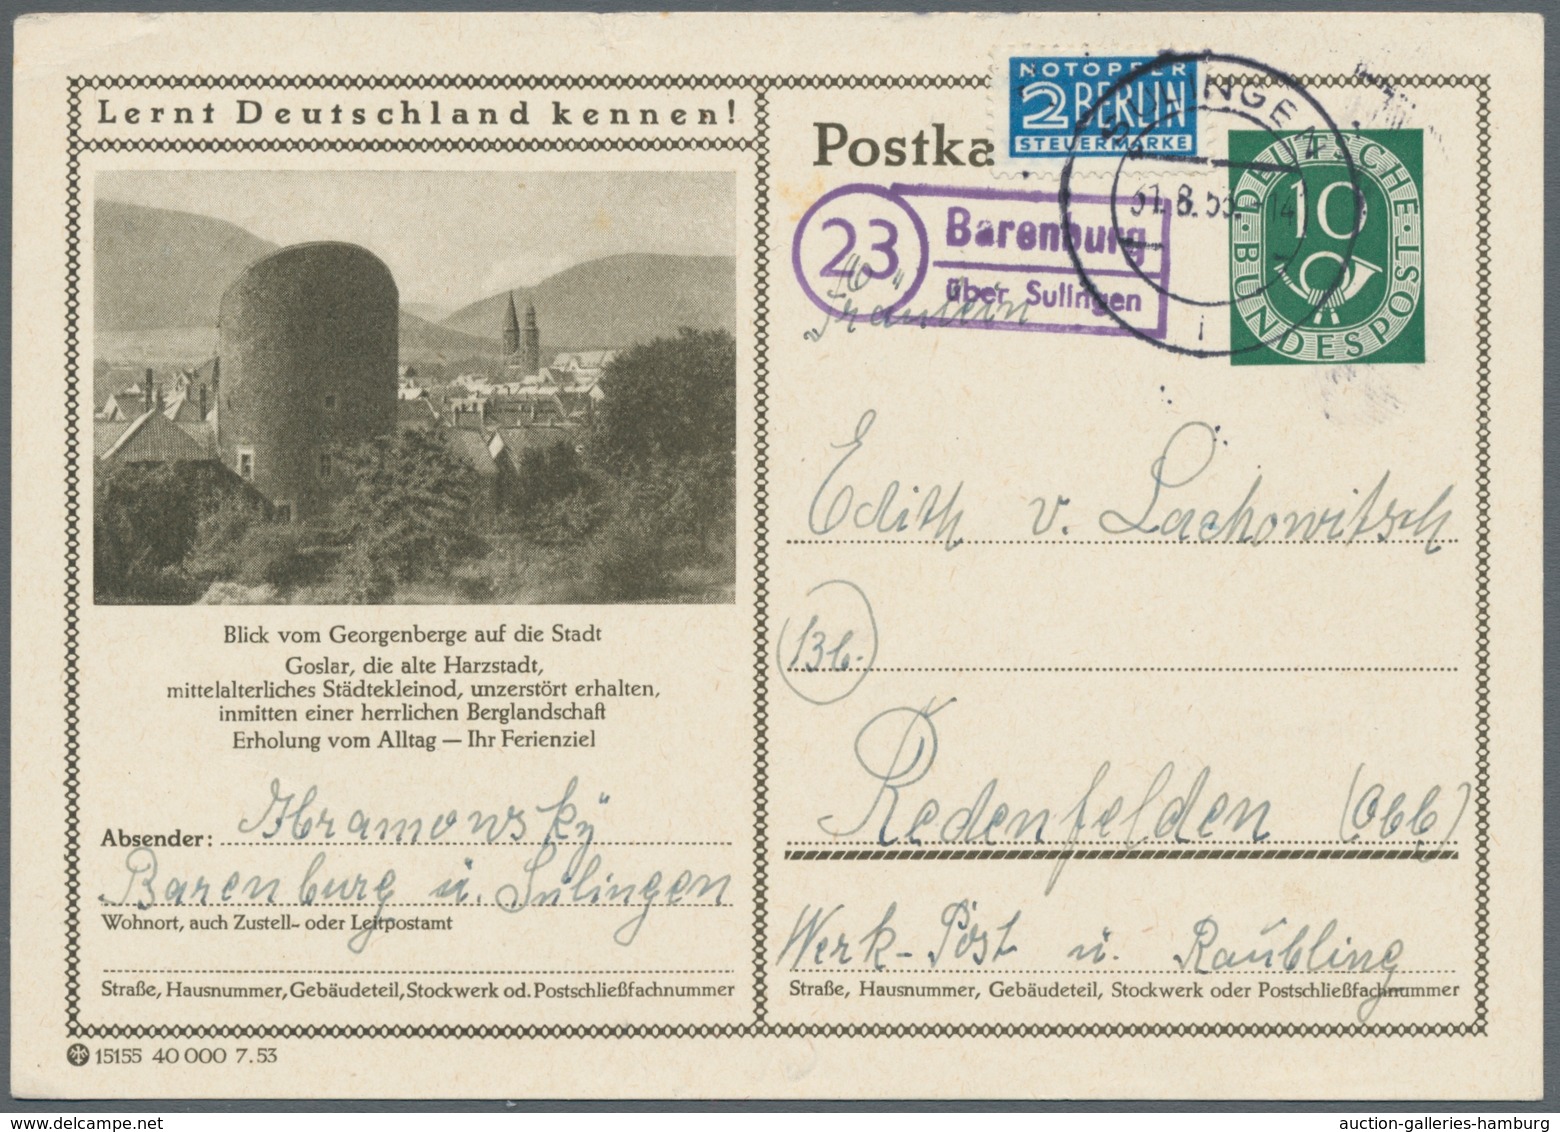 Bundesrepublik - Ganzsachen: 1951-1954, Sammlung von 45 gebrauchten und ungebrauchten Ganzsachen der